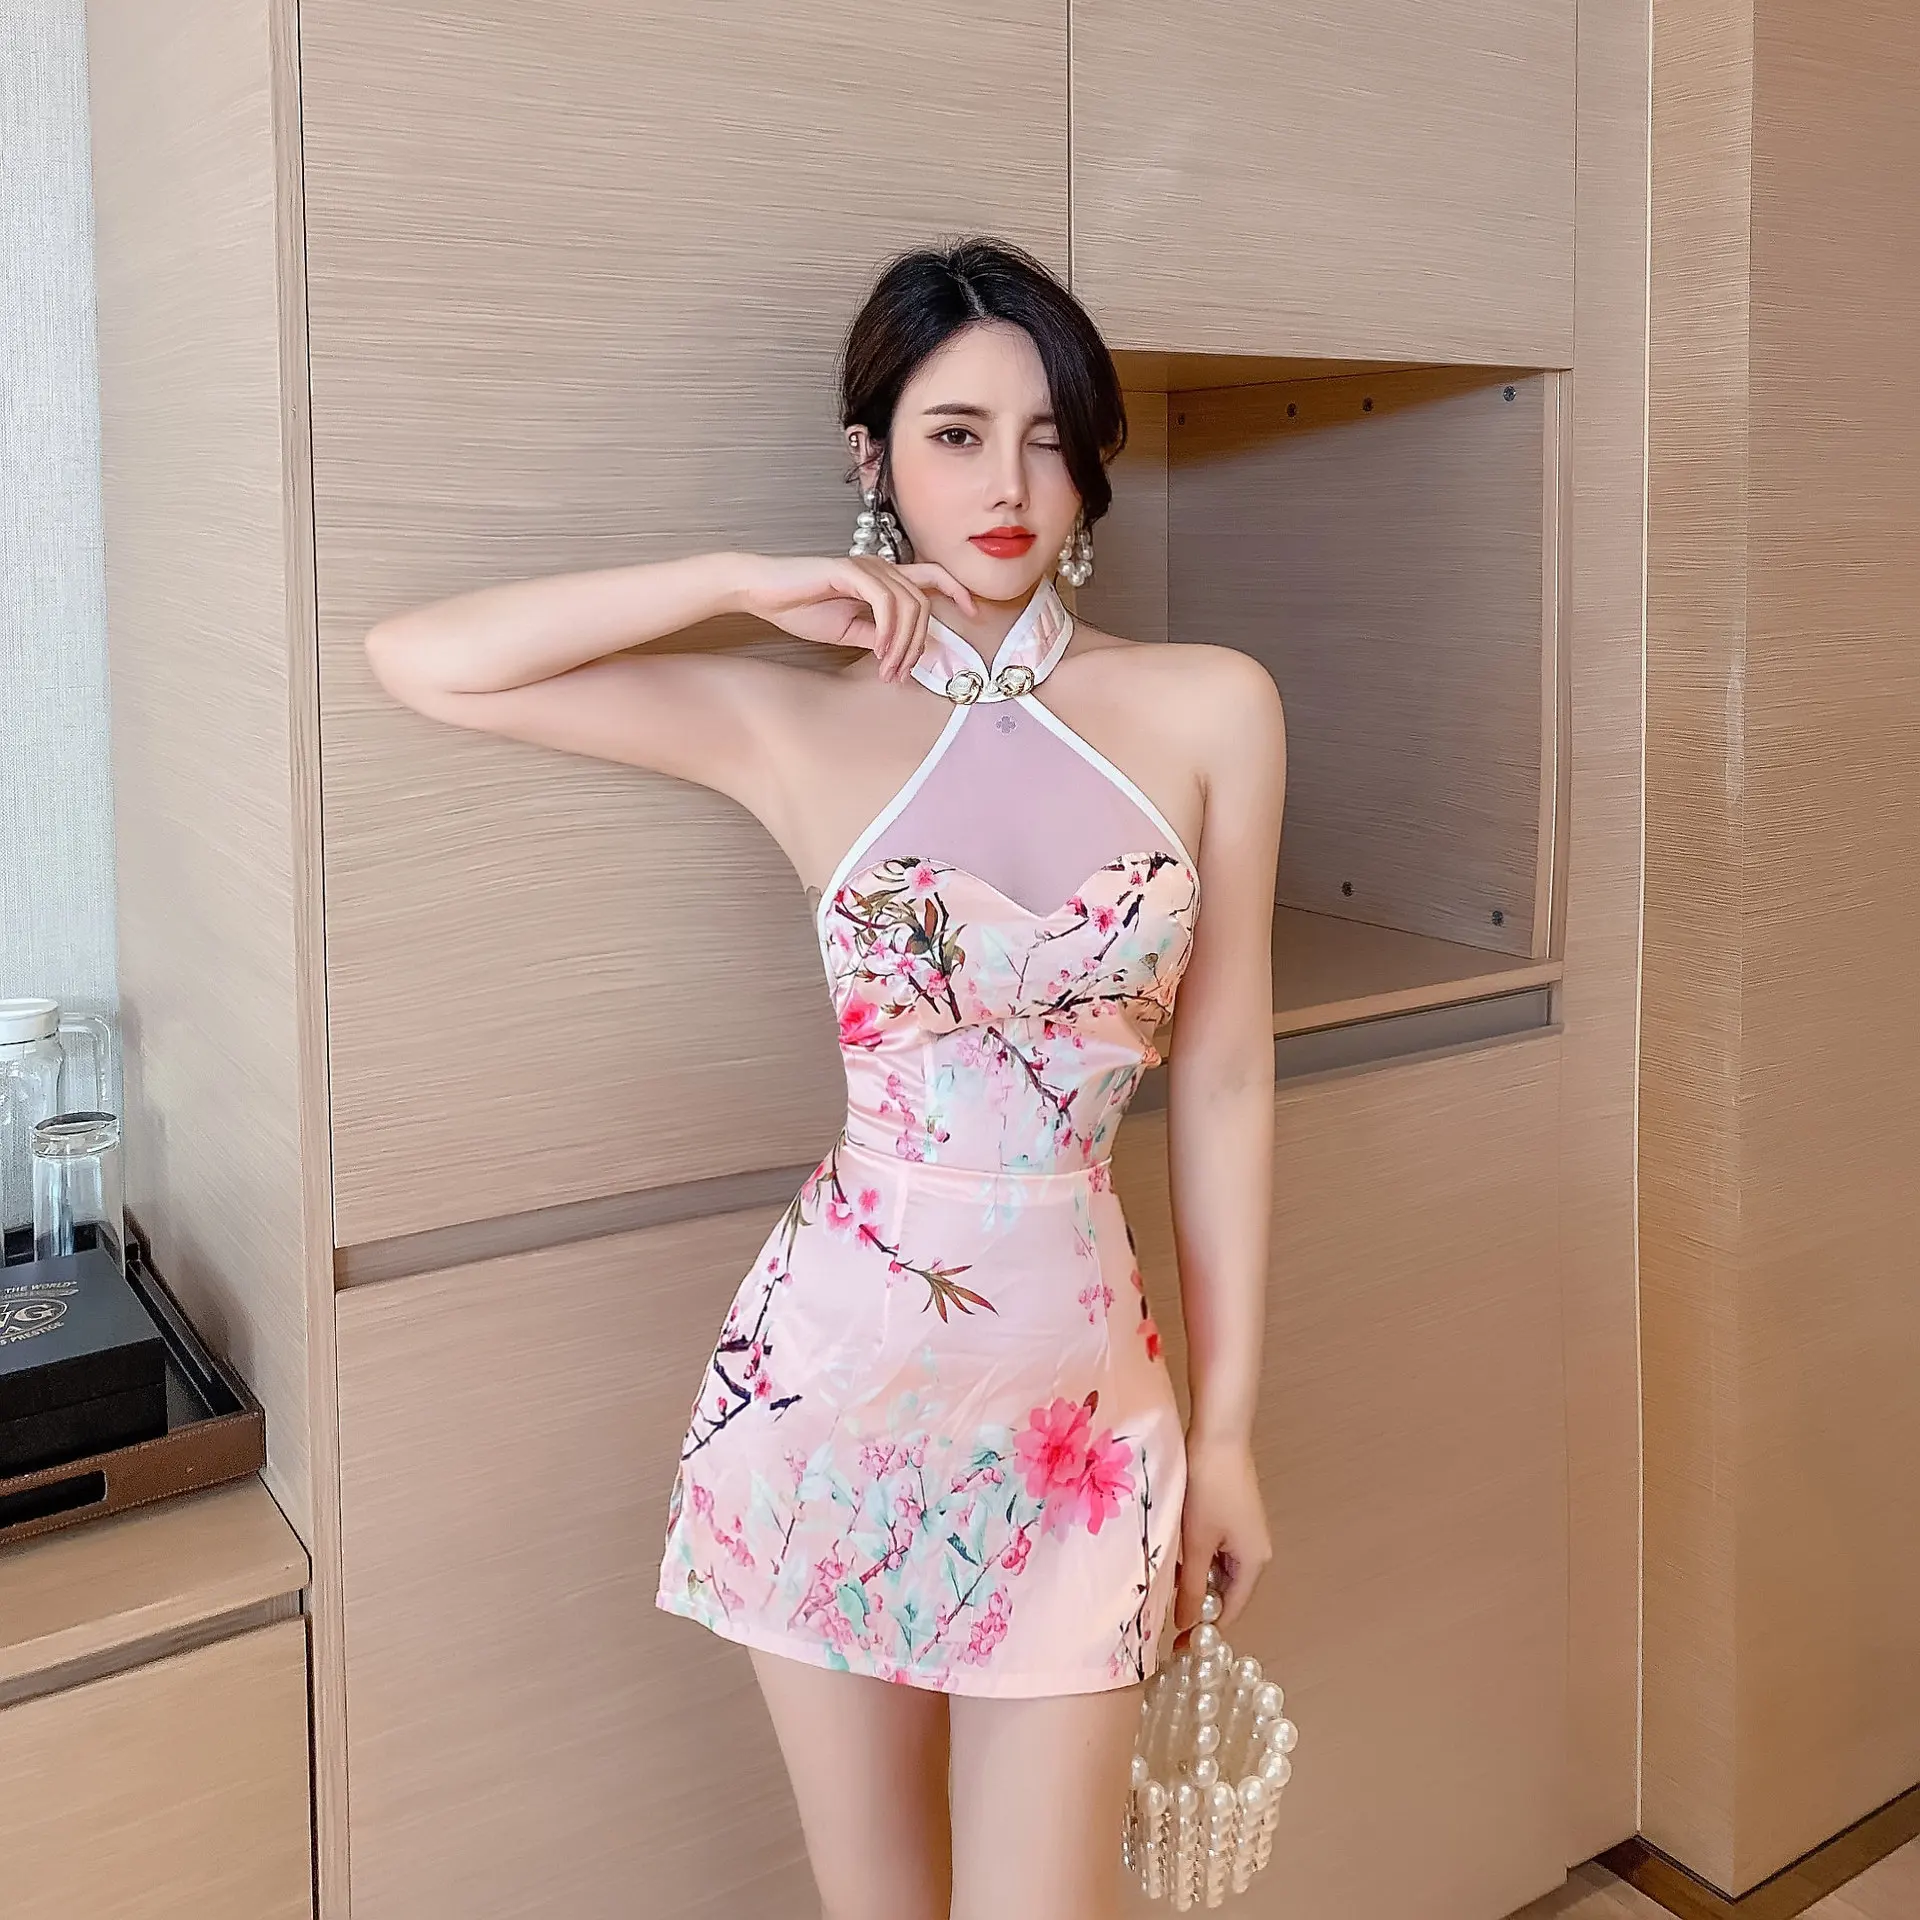 

Сексуальное модифицированное Короткое платье-Ципао в китайском стиле, женское платье для ночного клуба, прозрачная мини-юбка с низким вырезом на спине и шнуровкой